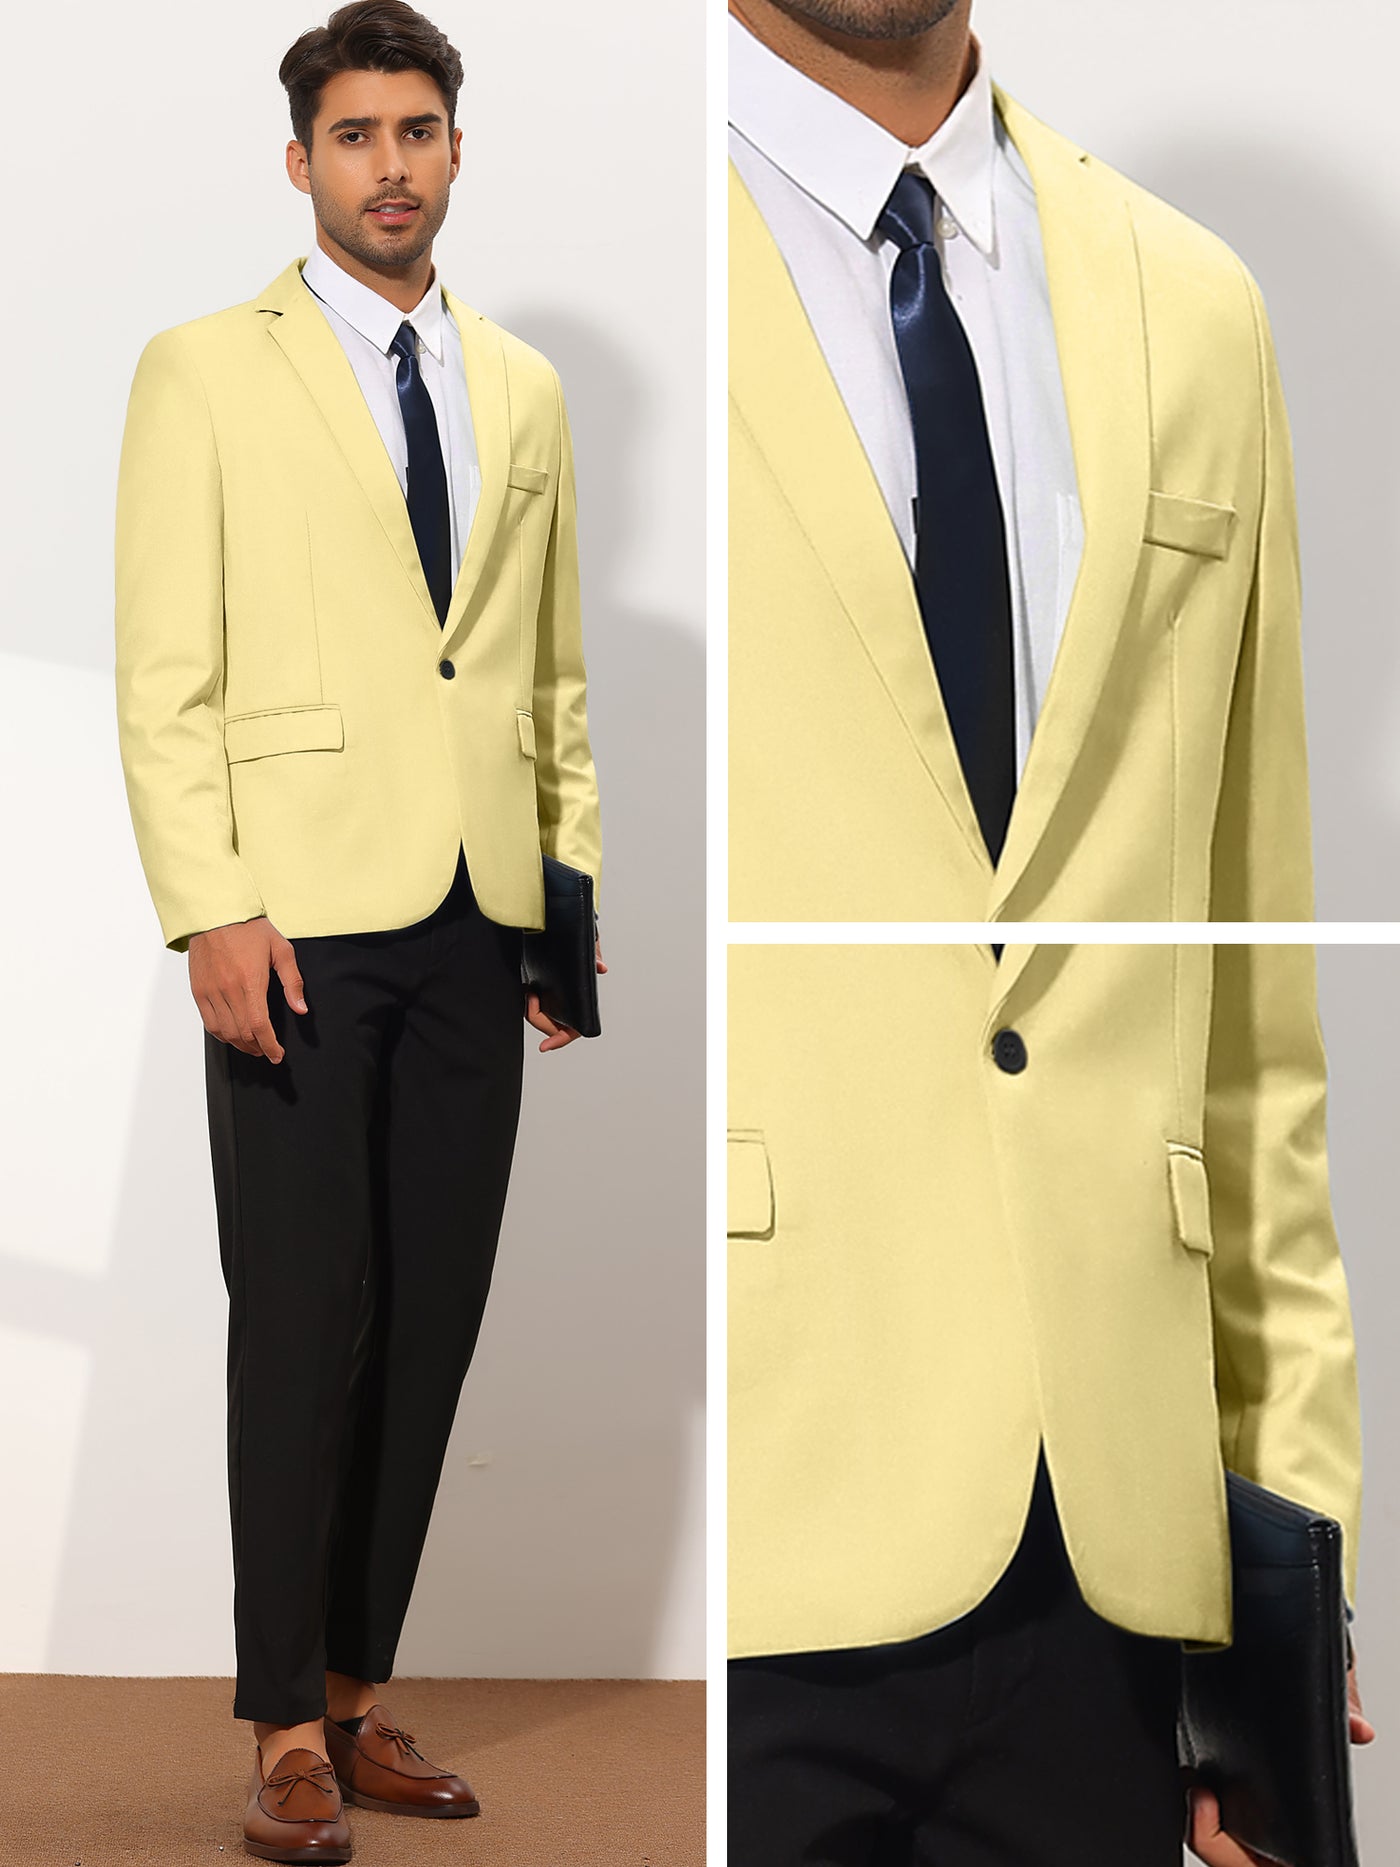 Bublédon Men's Sports Coat Slim Fit One Button Formal Prom Blazer Suit Jacket